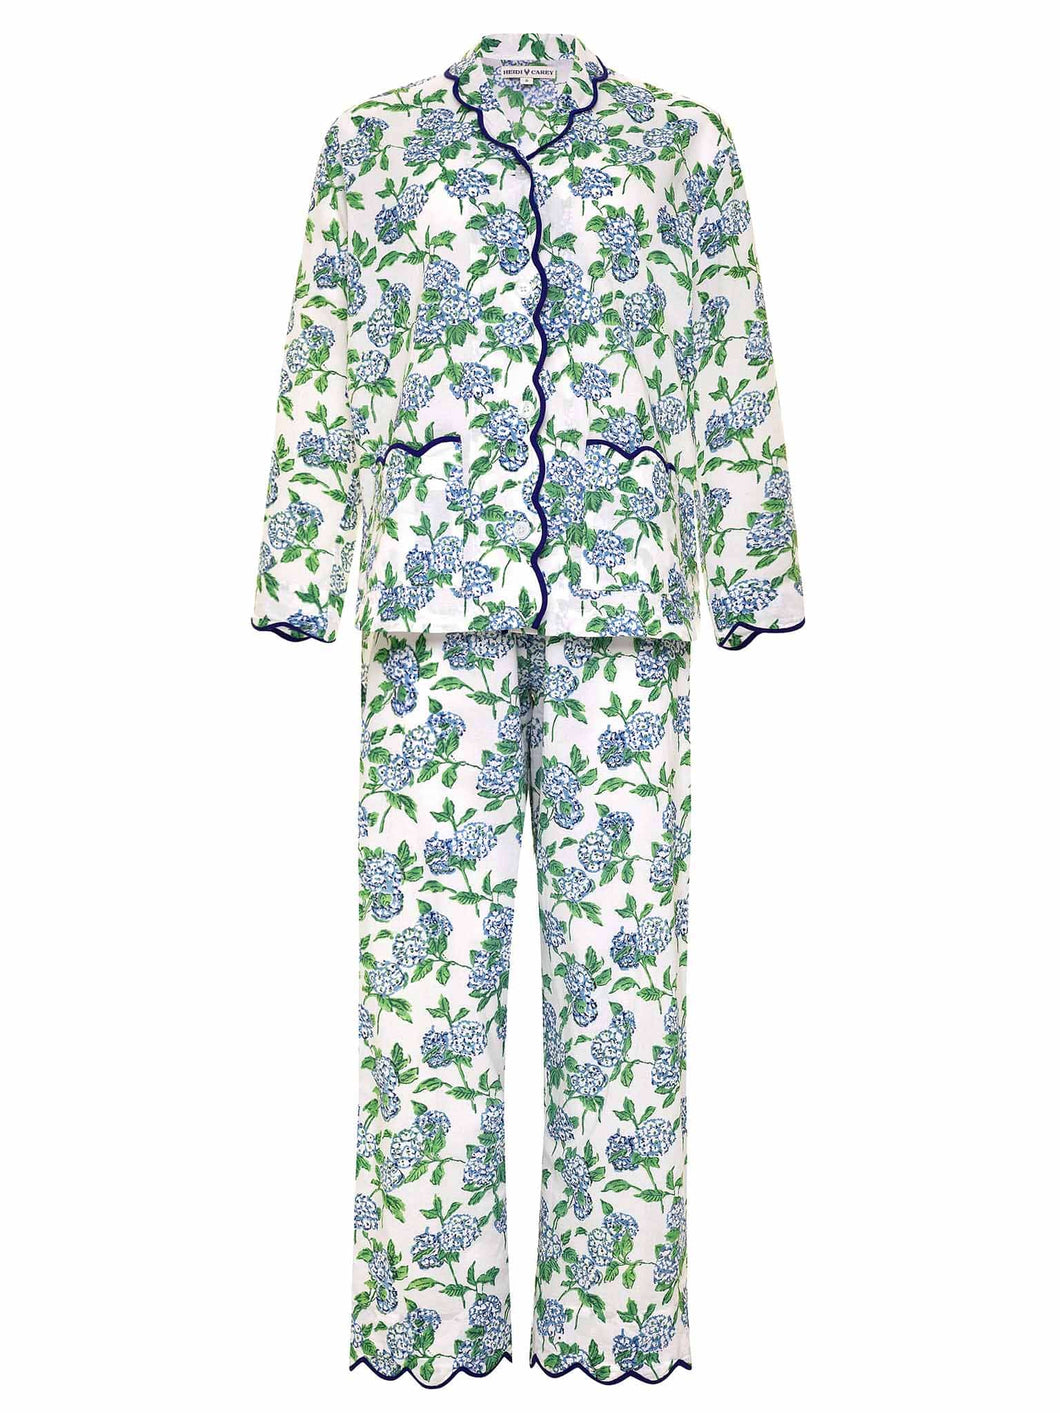 Hydrangea Pajamas with Scalloping – Heidi Carey